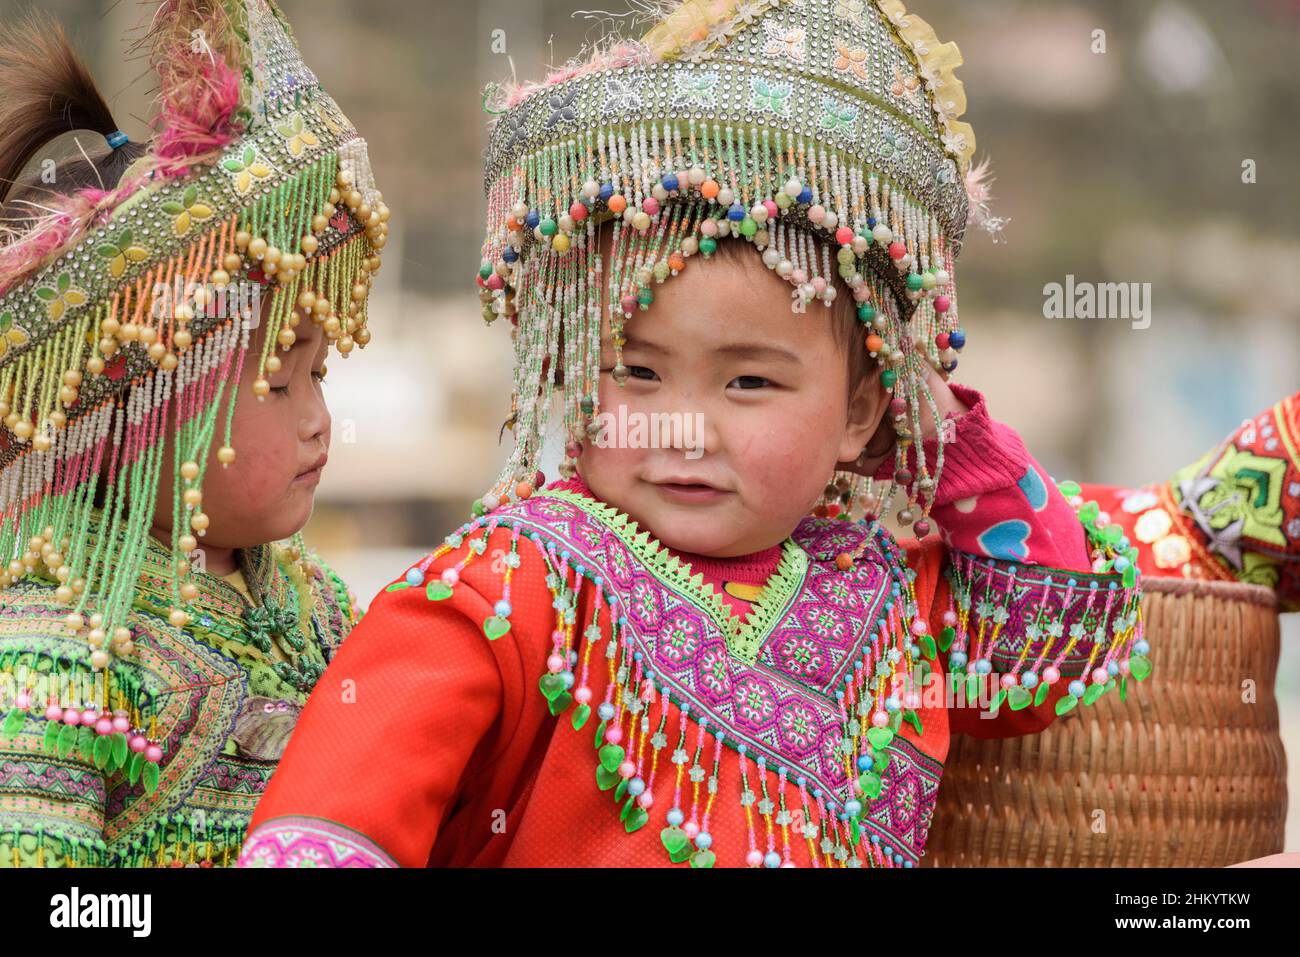 Ragazze giovani, indossando abiti tradizionali della tribù Hmong, aspettano di posare per le fotografie dei turisti nella piazza della città, Sapa (SA Pa), Lao Cai, Vietnam Foto Stock